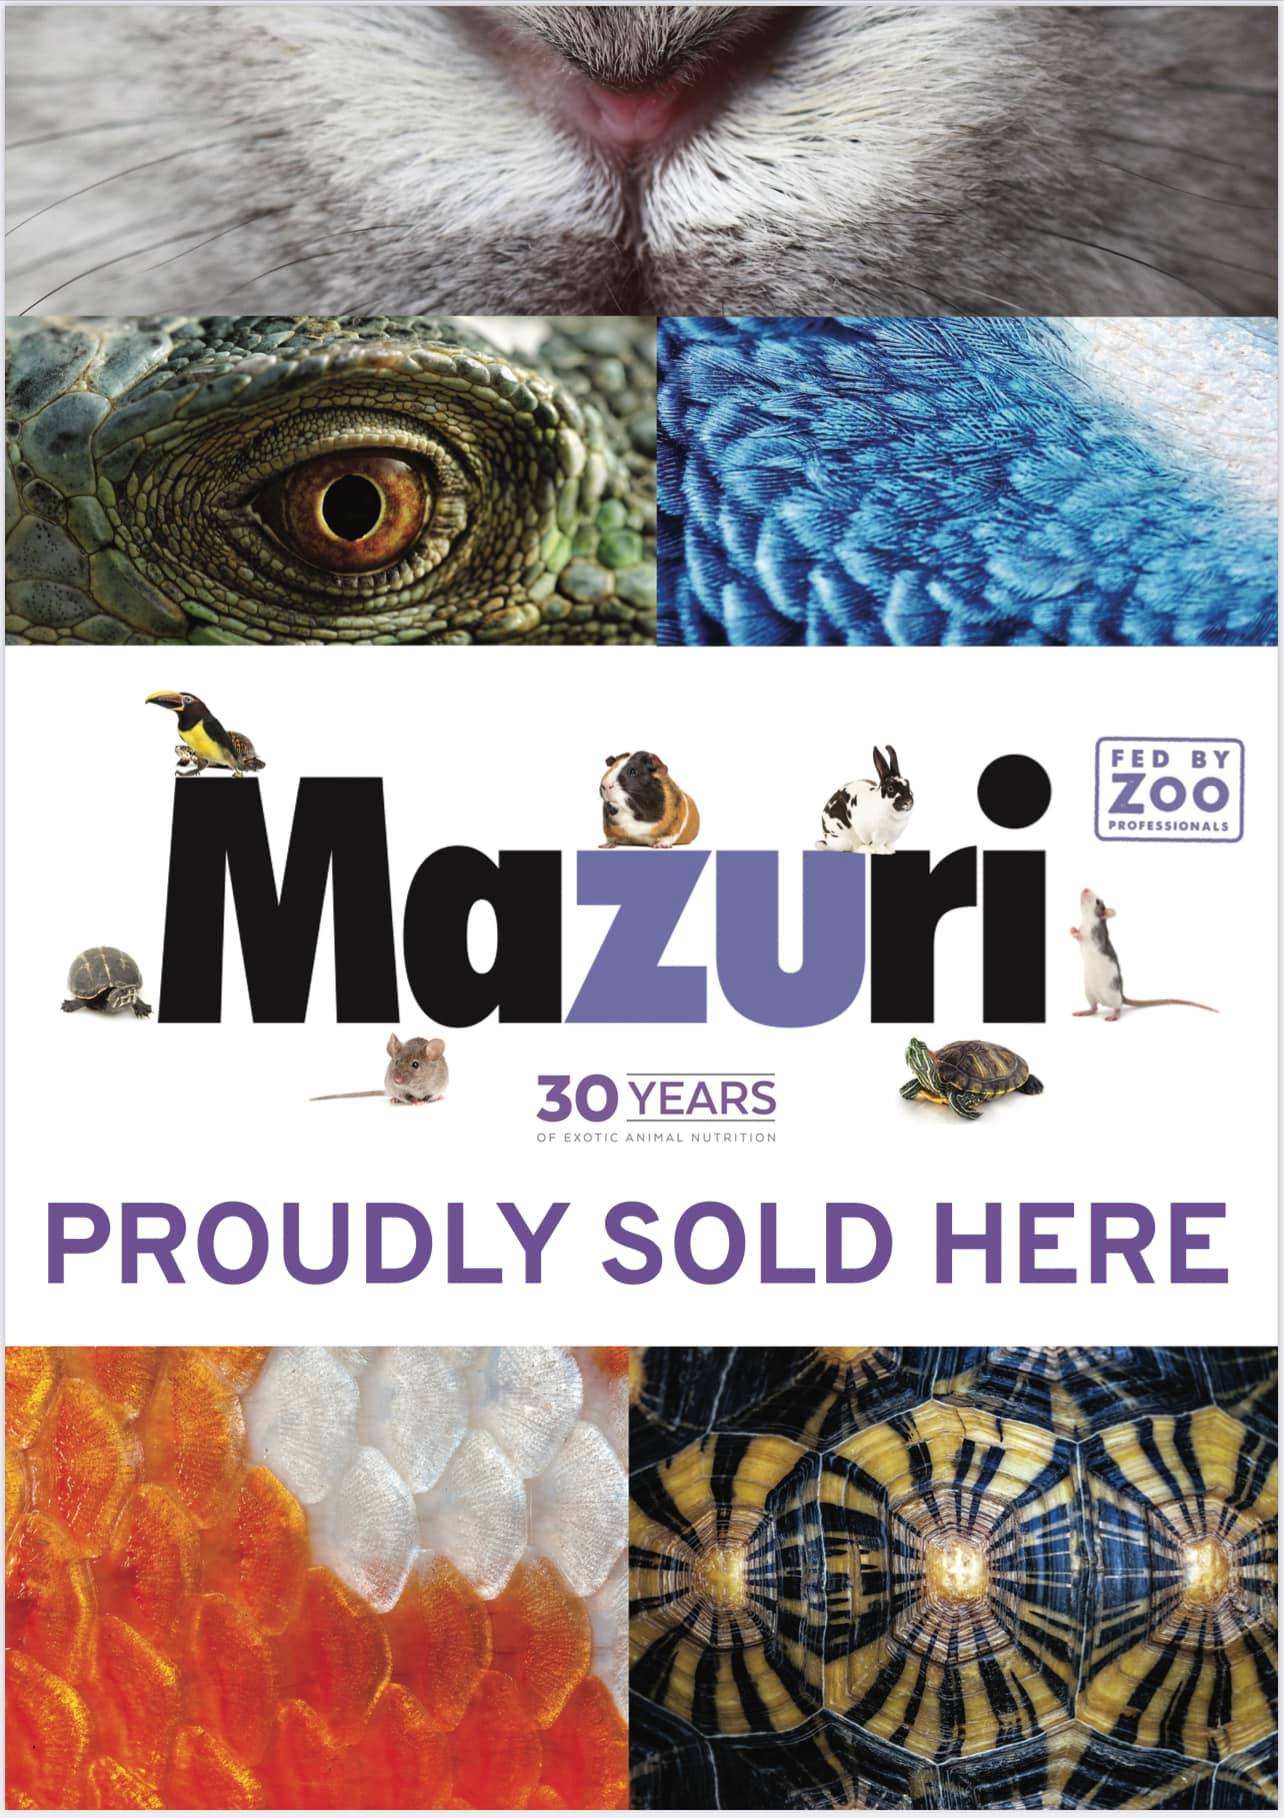 Mazuri là thương hiệu cung cấp các loại thức ăn chăn nuôi nổi tiếng tại Mỹ